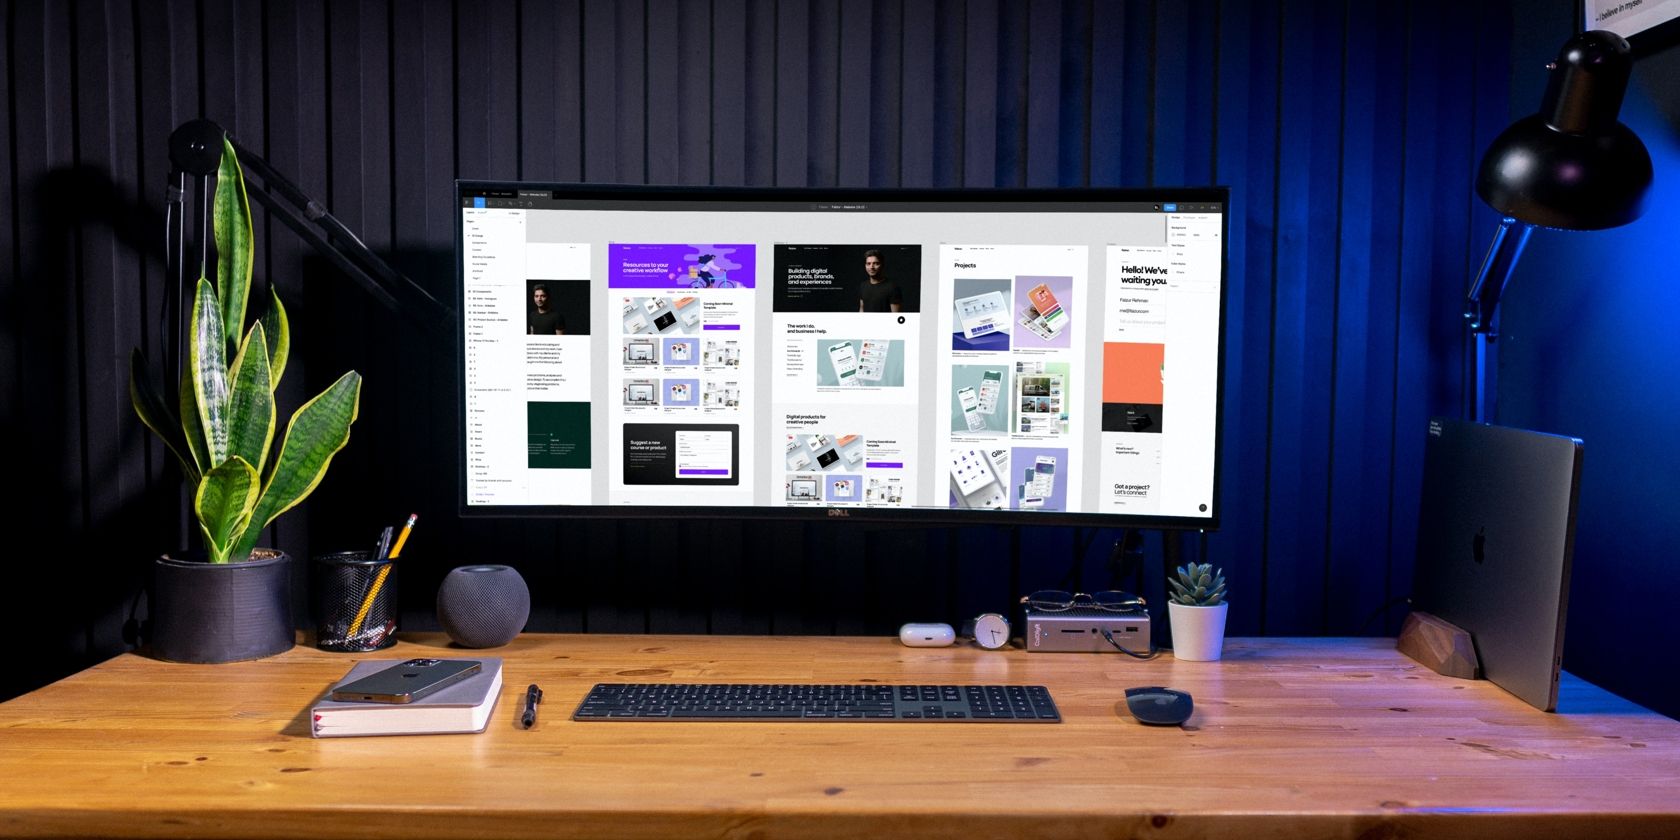 A monitor with a WYSIWYG editor displayed.